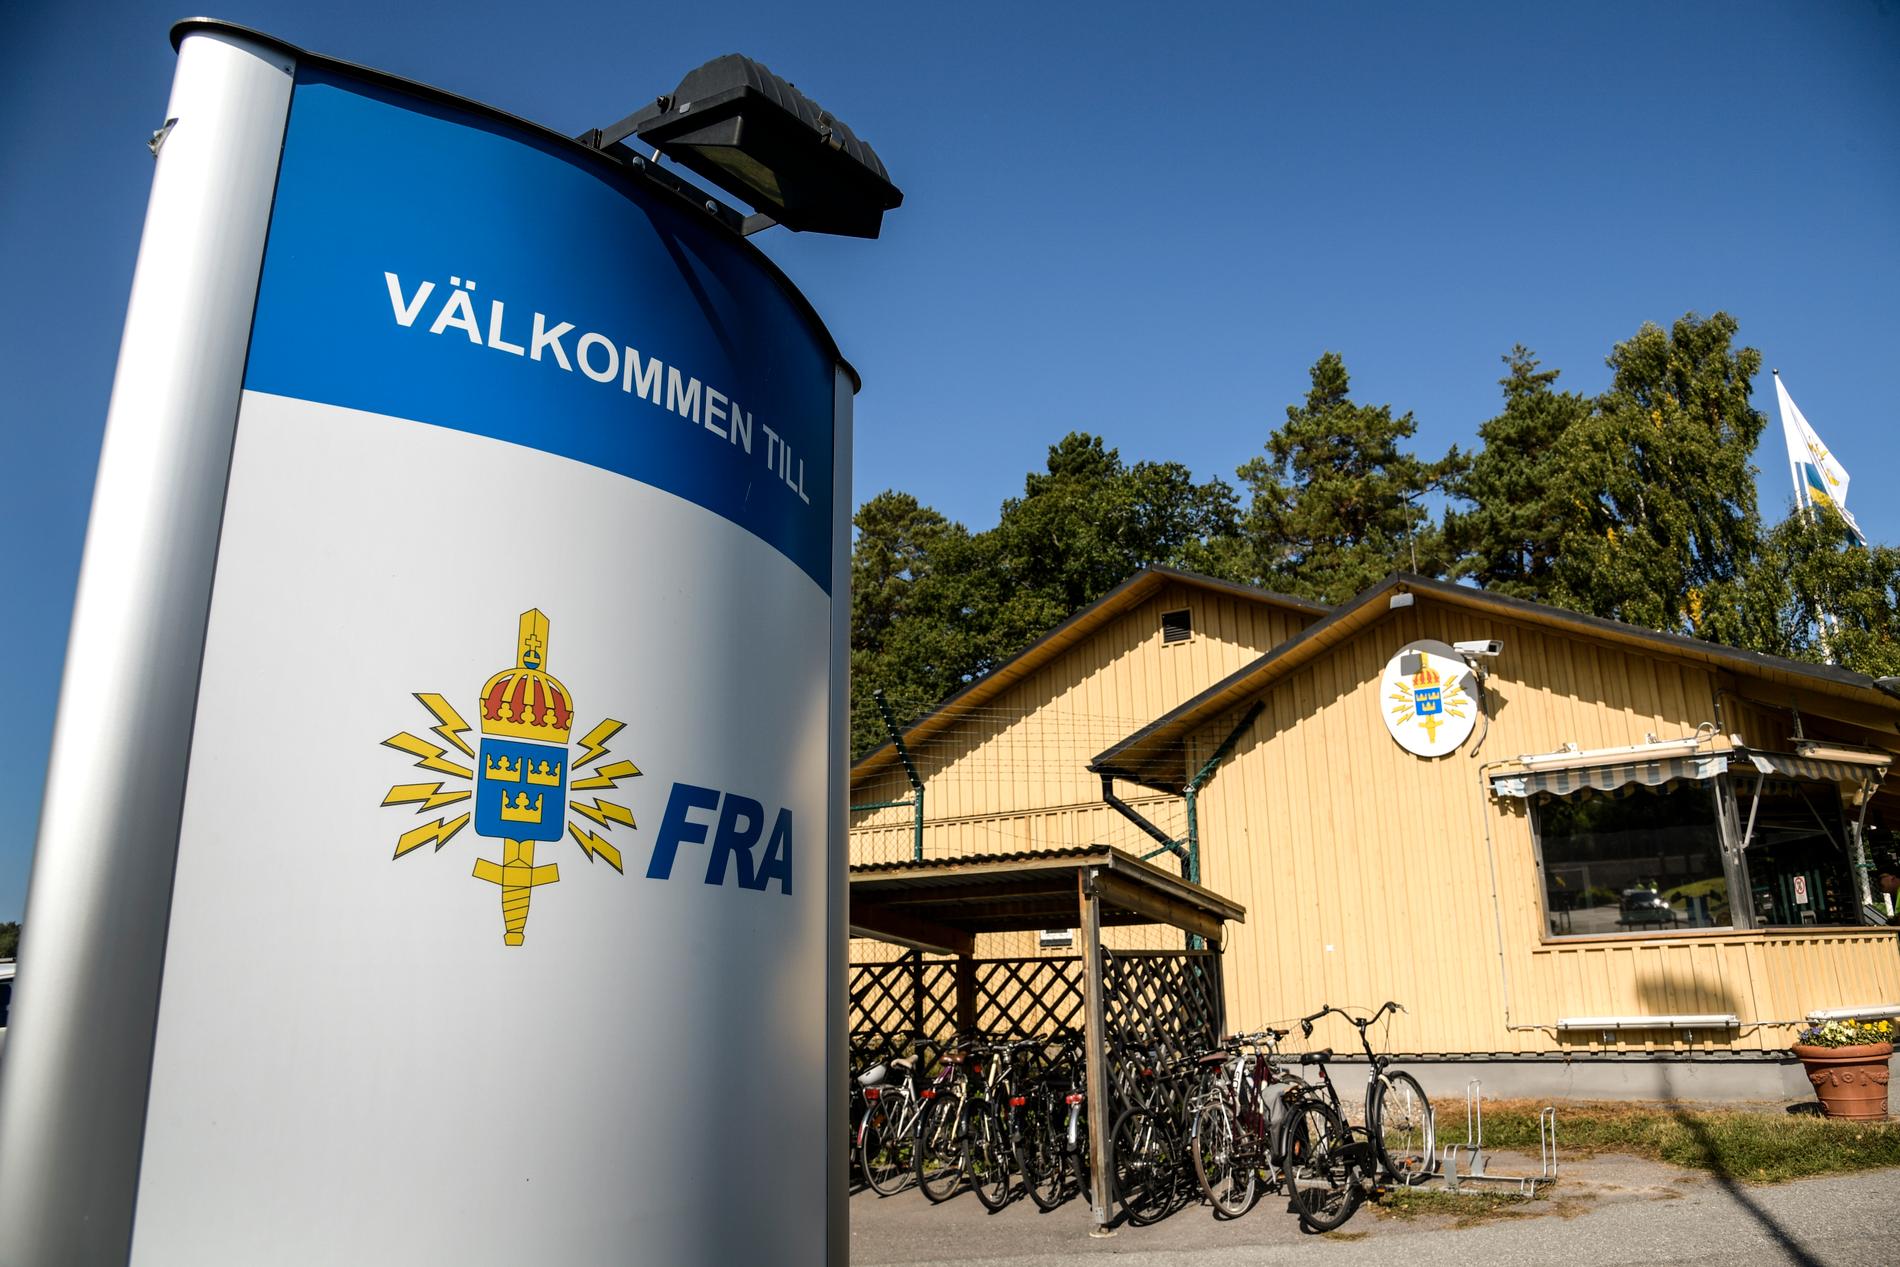 FRA, Försvarets radioanstalt.